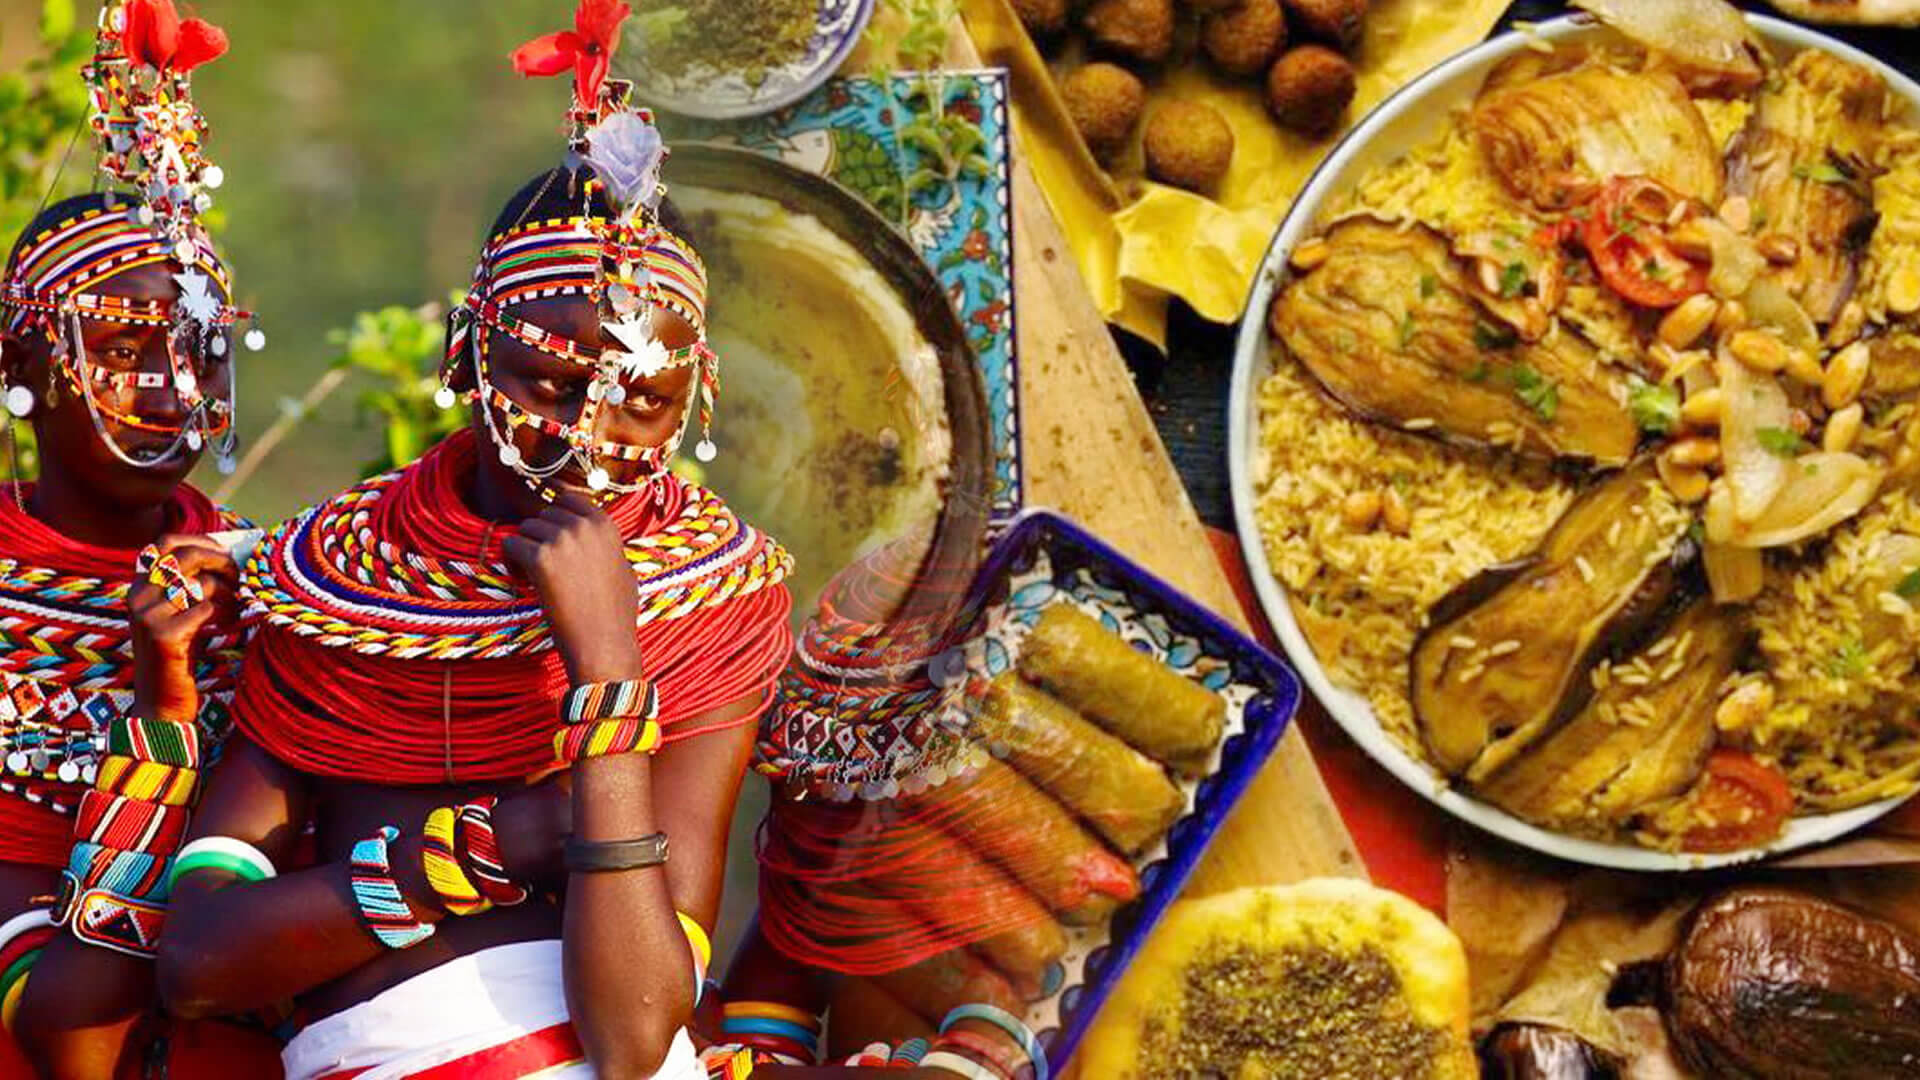 Arole Cultural | De todos os costumes e tradições africanas das quais recebemos influência no Brasil, talvez a culinária seja a mais presente - e certamente é a...